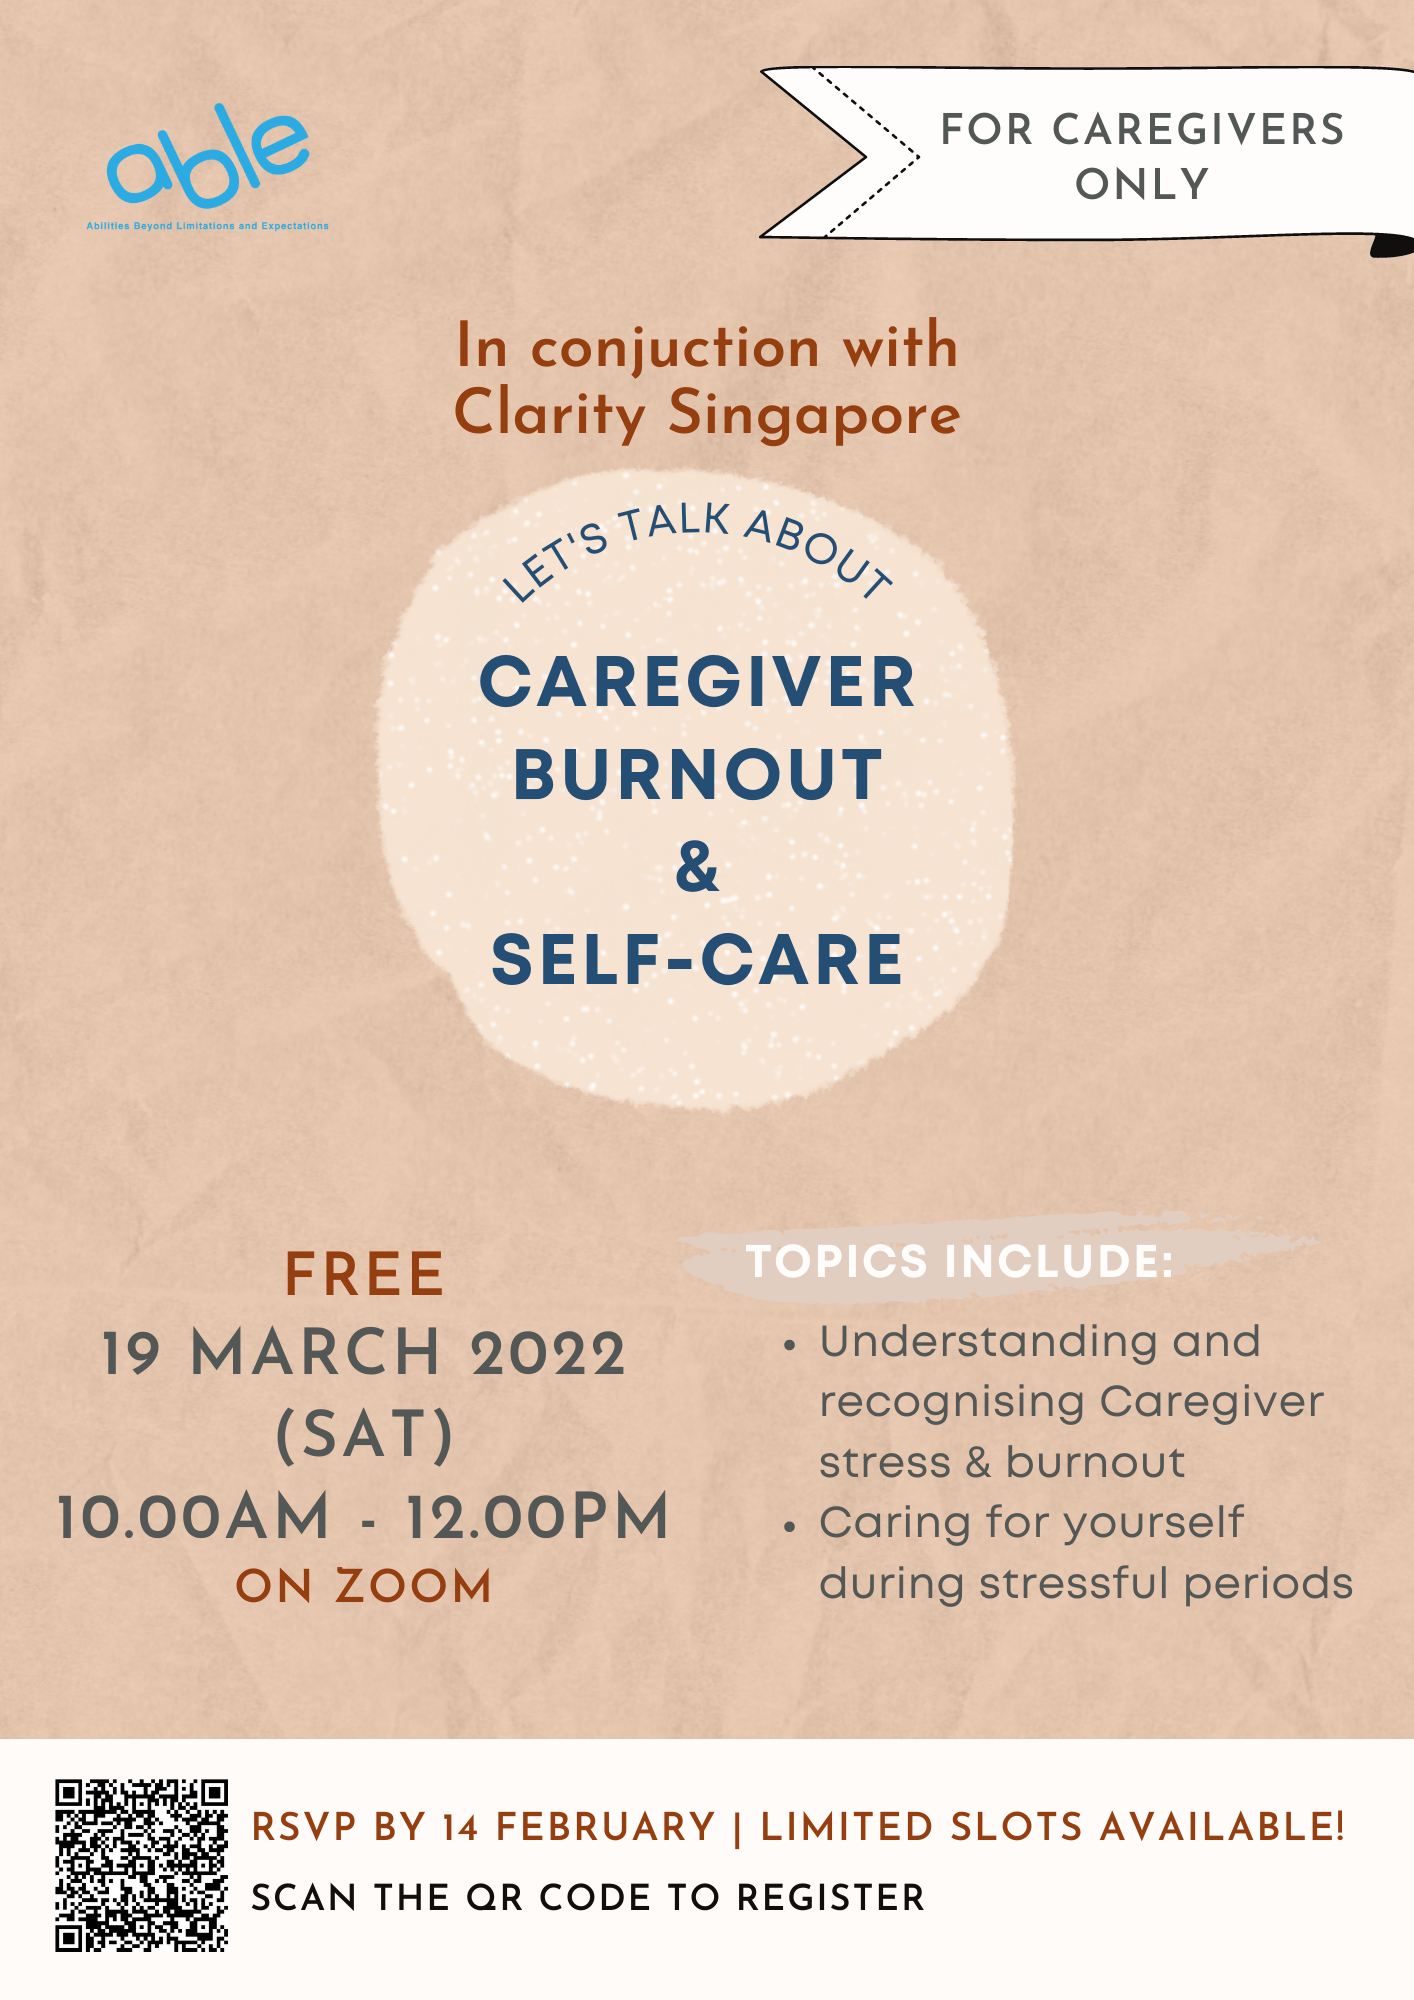 Let's Talk About: Caregiver Burnout & Self-Care